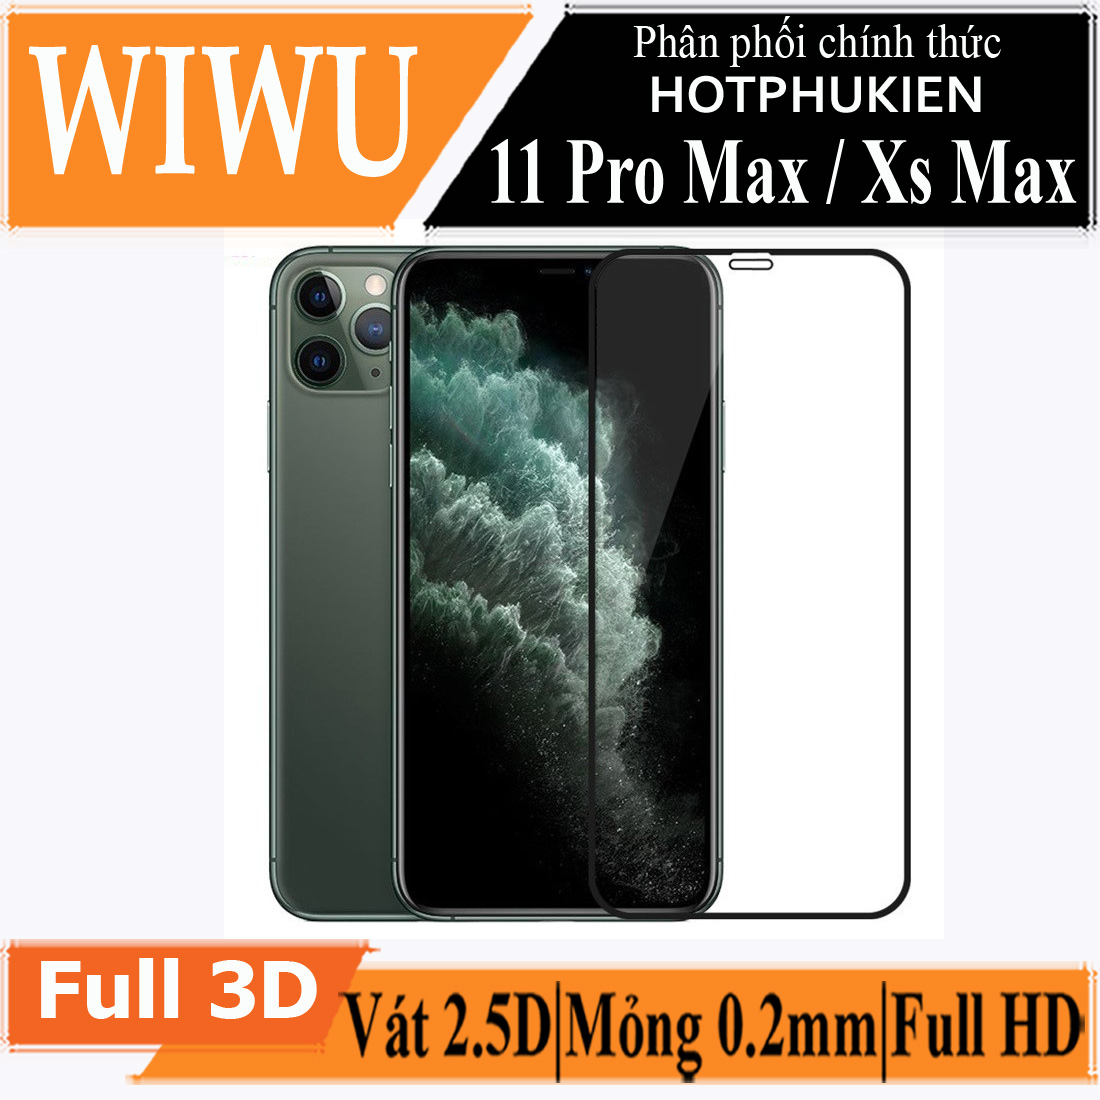 Miếng dán kính cường lực Cho iPhone 11 / 11 Pro / 11 Pro Max / X / Xs / Xs Max / XR full màn hình 2.5D chống nứt vỡ cạnh hiệu WIWU iVista Chống va đập, vát cạnh 2.5D, chống vân tay - hàng nhập khẩu